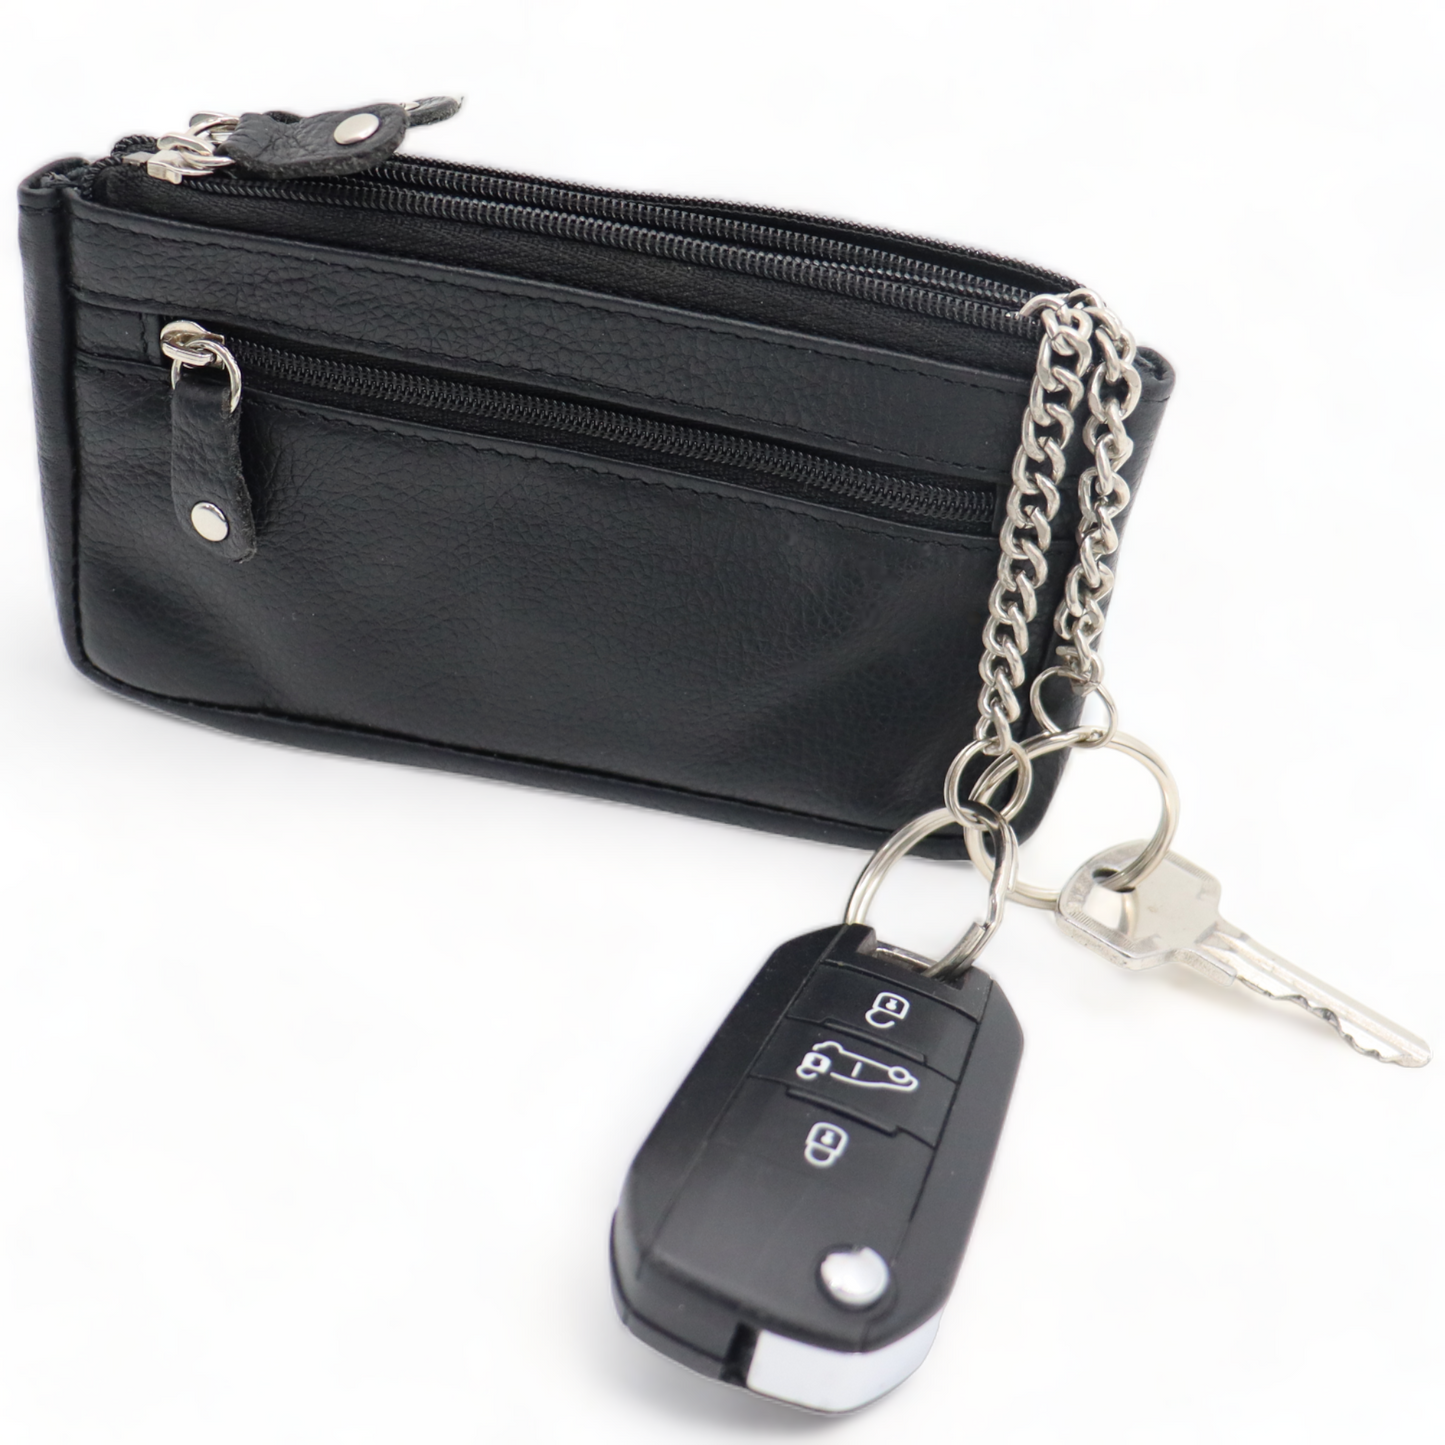 Schlüsselmäppchen XL - Schlüsselmäppchen XL - Schlüsselmäppchen - Echtes Leder - Schlüsselmappe